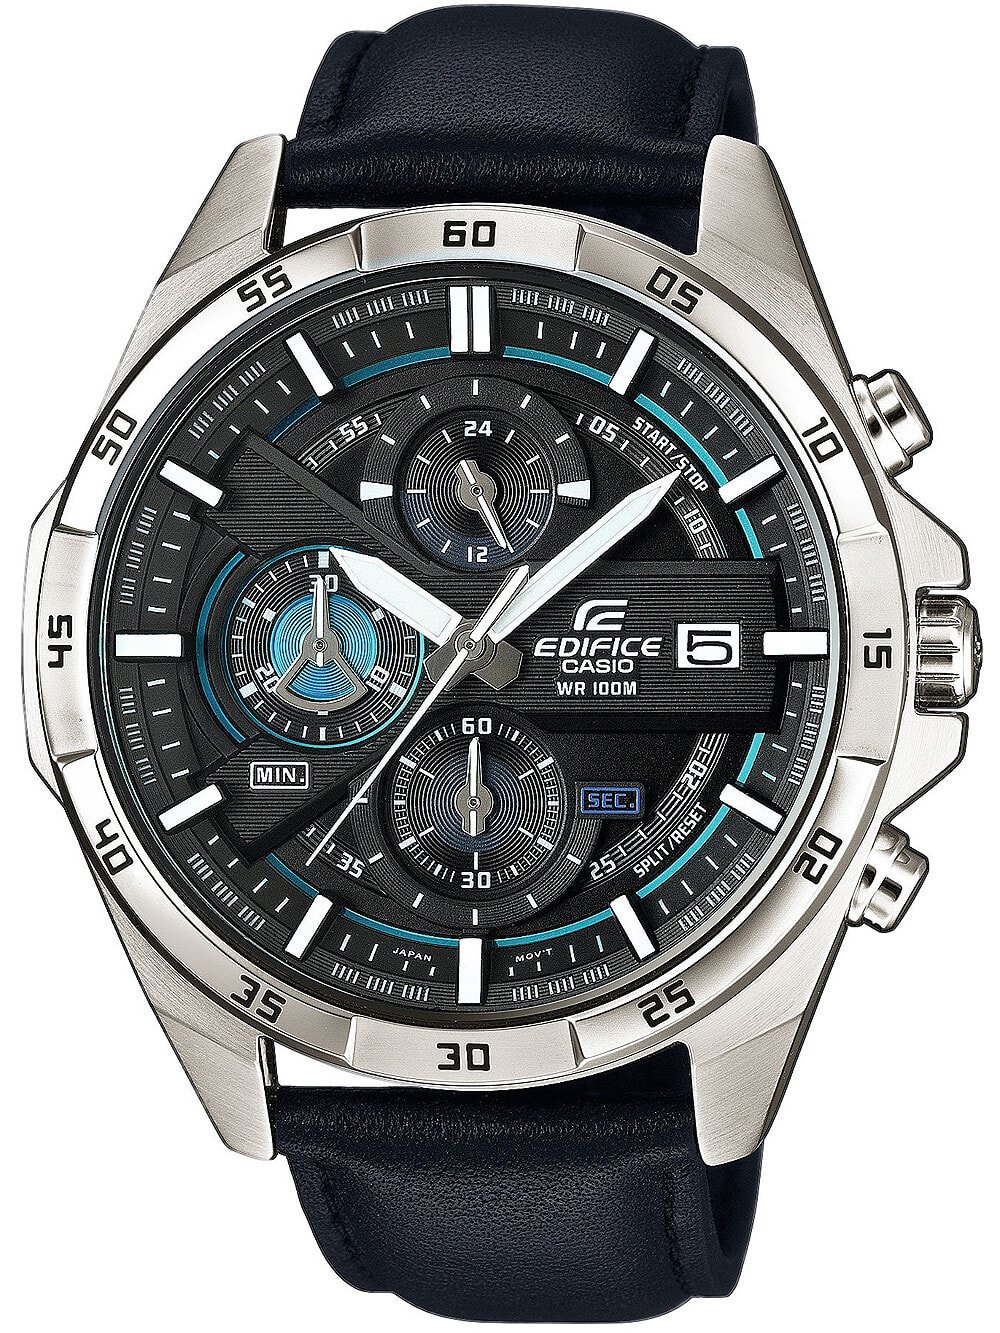 Мужские наручные часы с черным кожаным ремешком Casio EFR-556L-1AVUEF Edifice mens 49mm 10ATM